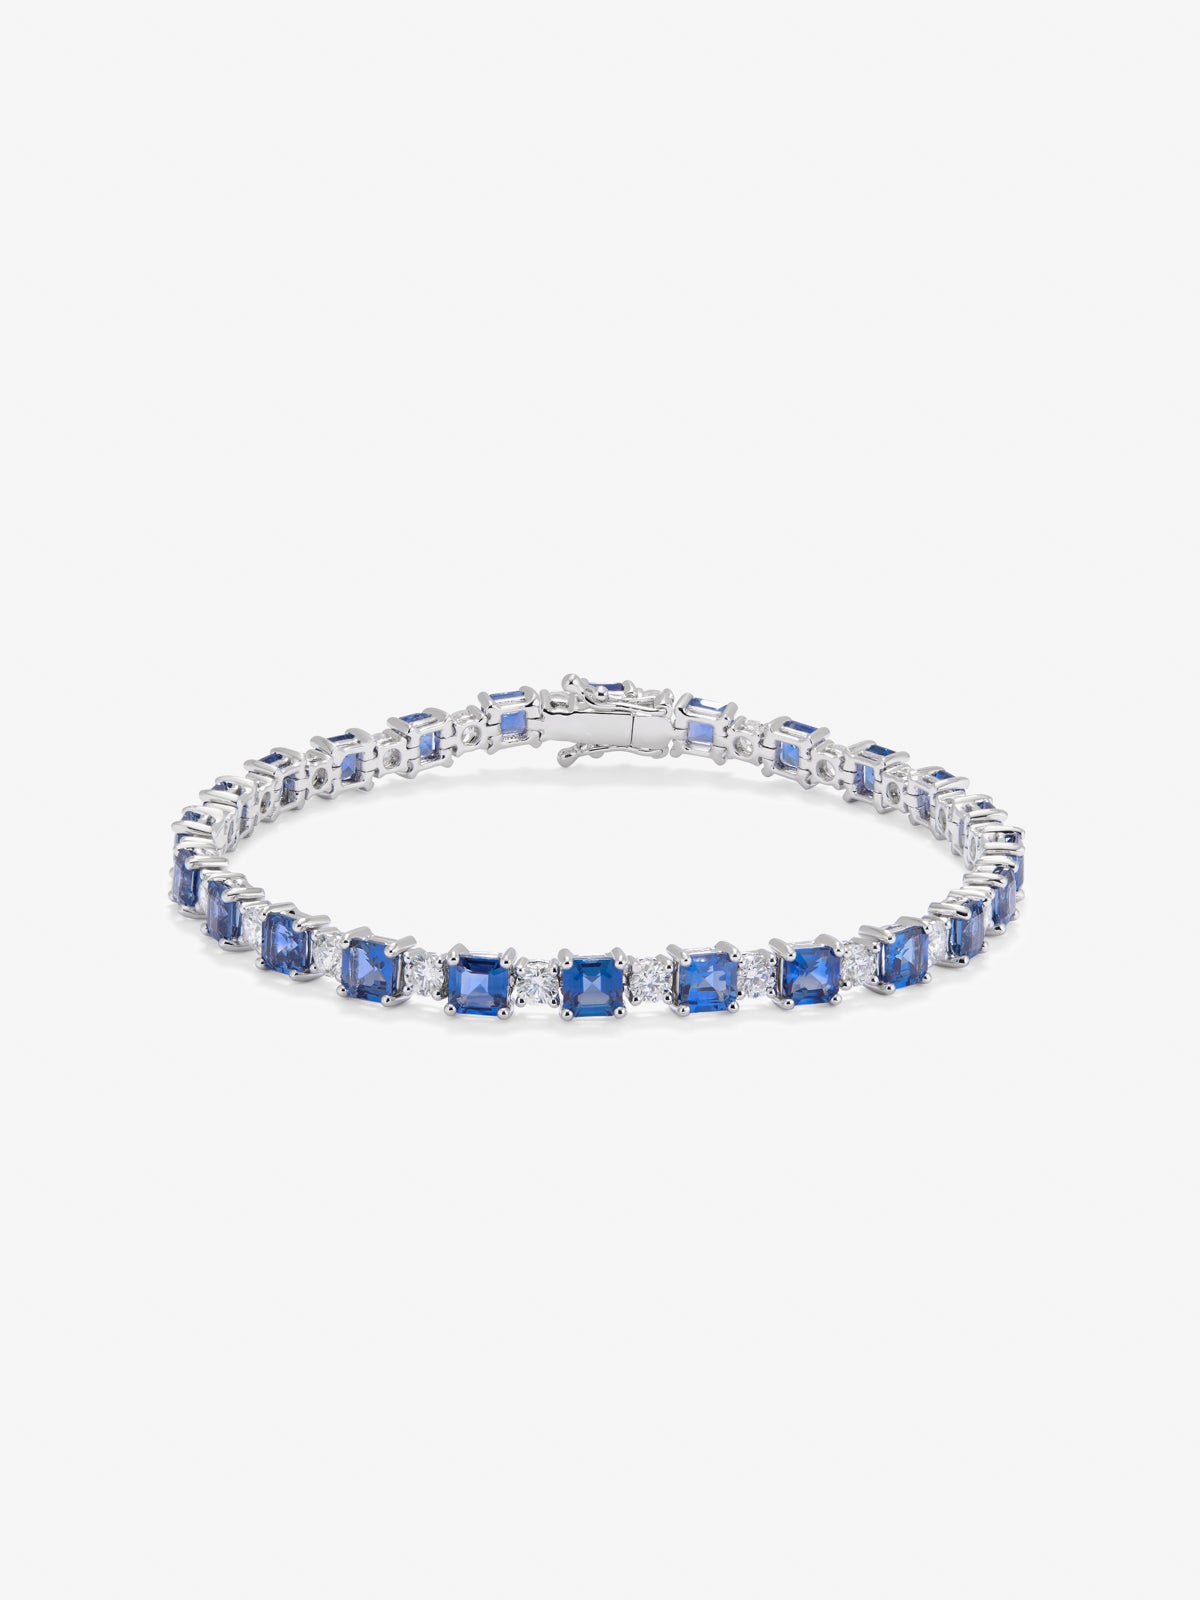 Pulsera rivière de oro blanco de 18K con zafiros azules en talla octogonal de 9,97 cts y diamantes blancos en talla brillante de 2,95 cts